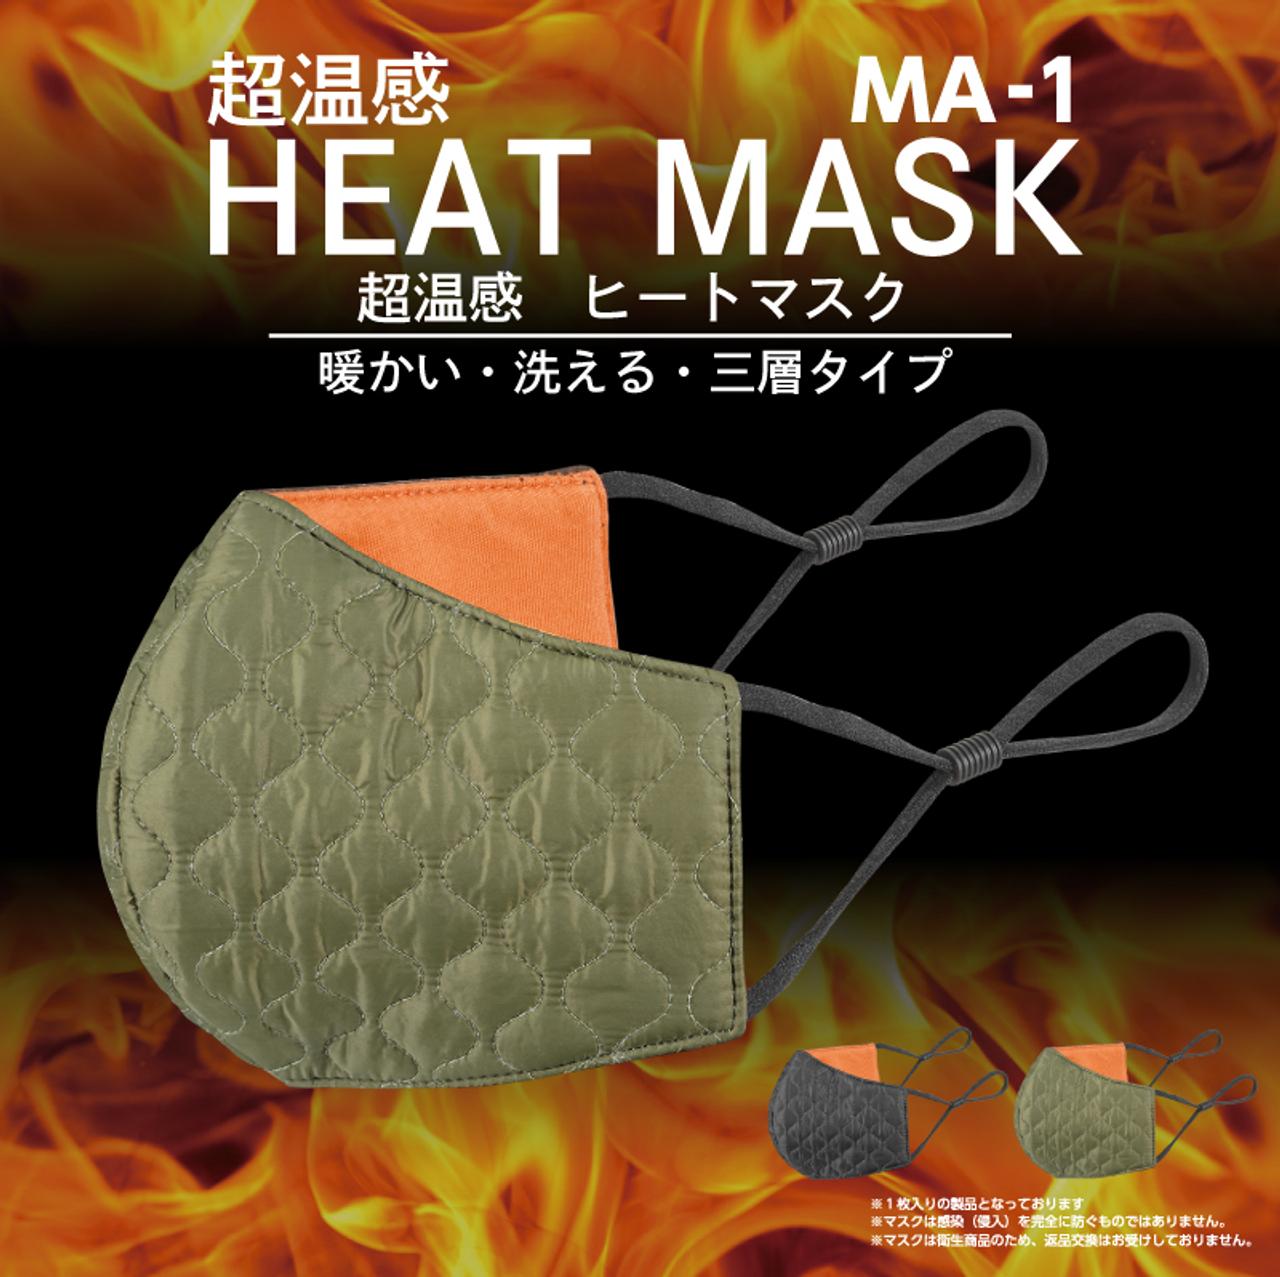 マスクもそろそろ冬支度。MA-1ジャケット風味の抗菌仕様超温感ヒートマスク